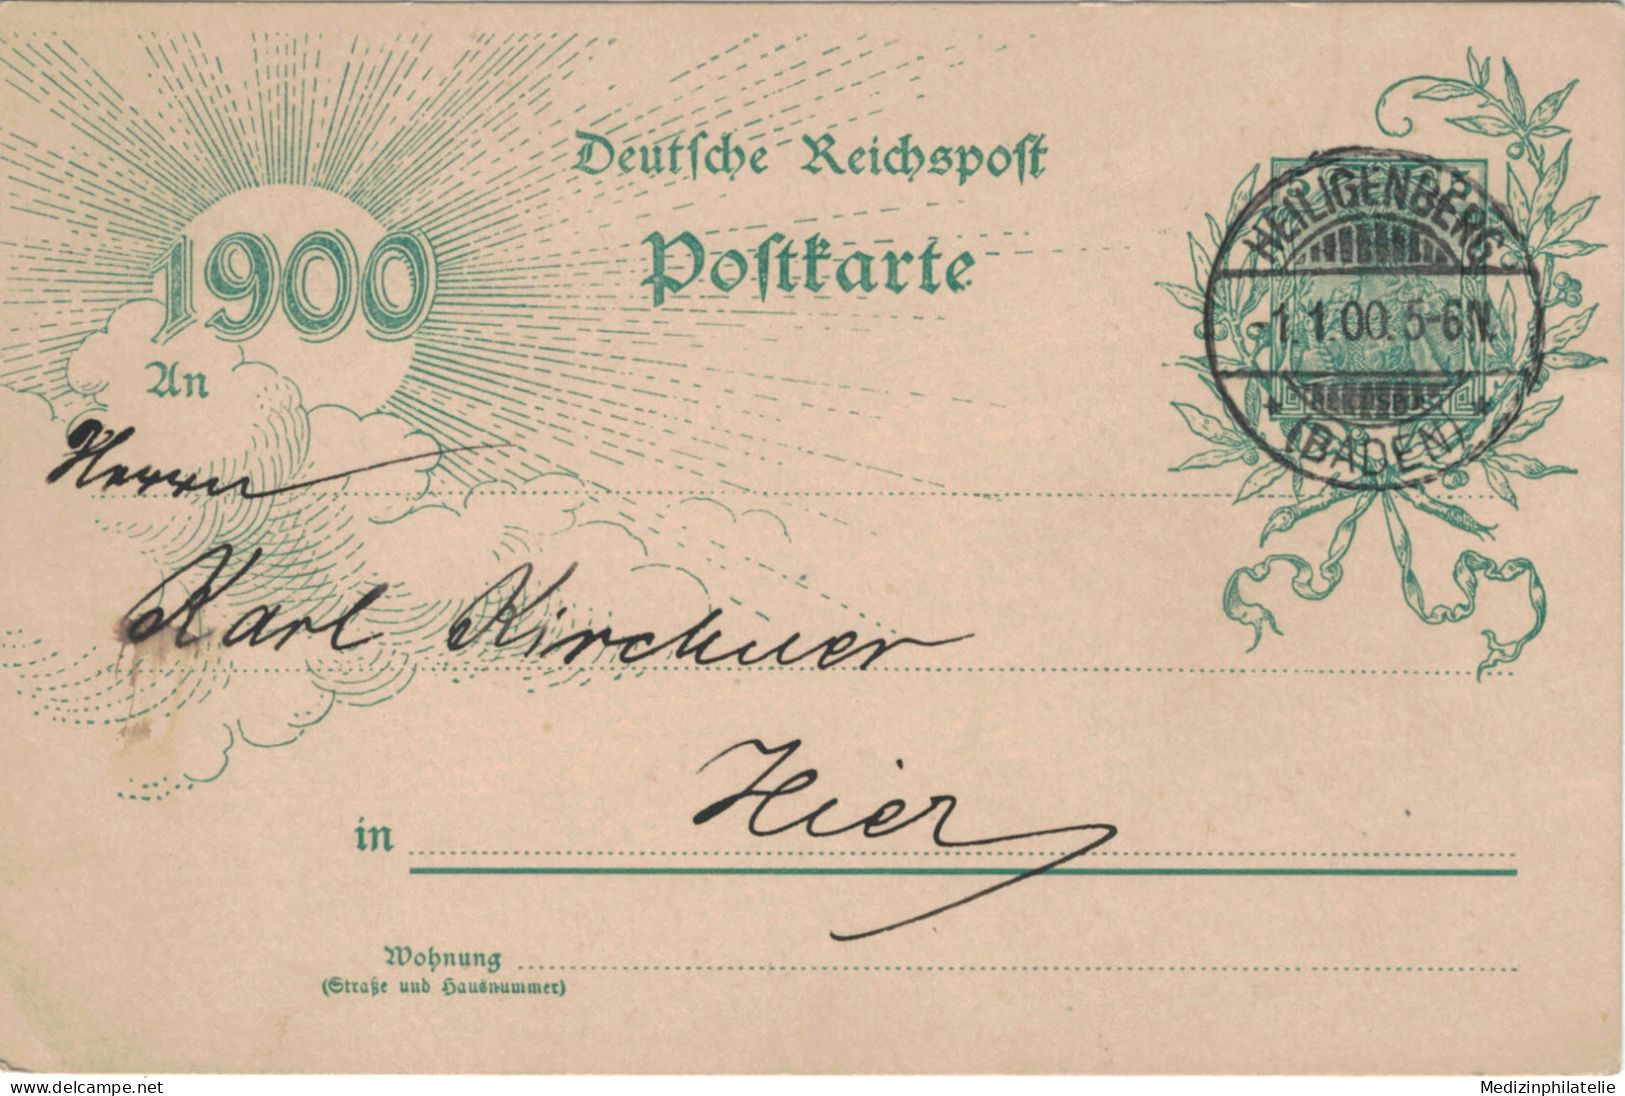 Ganzsache 5 Pfennig Jubiläumskarte 1900 - Ortskarte Heiligenberg 1.1.1900 - Postkarten